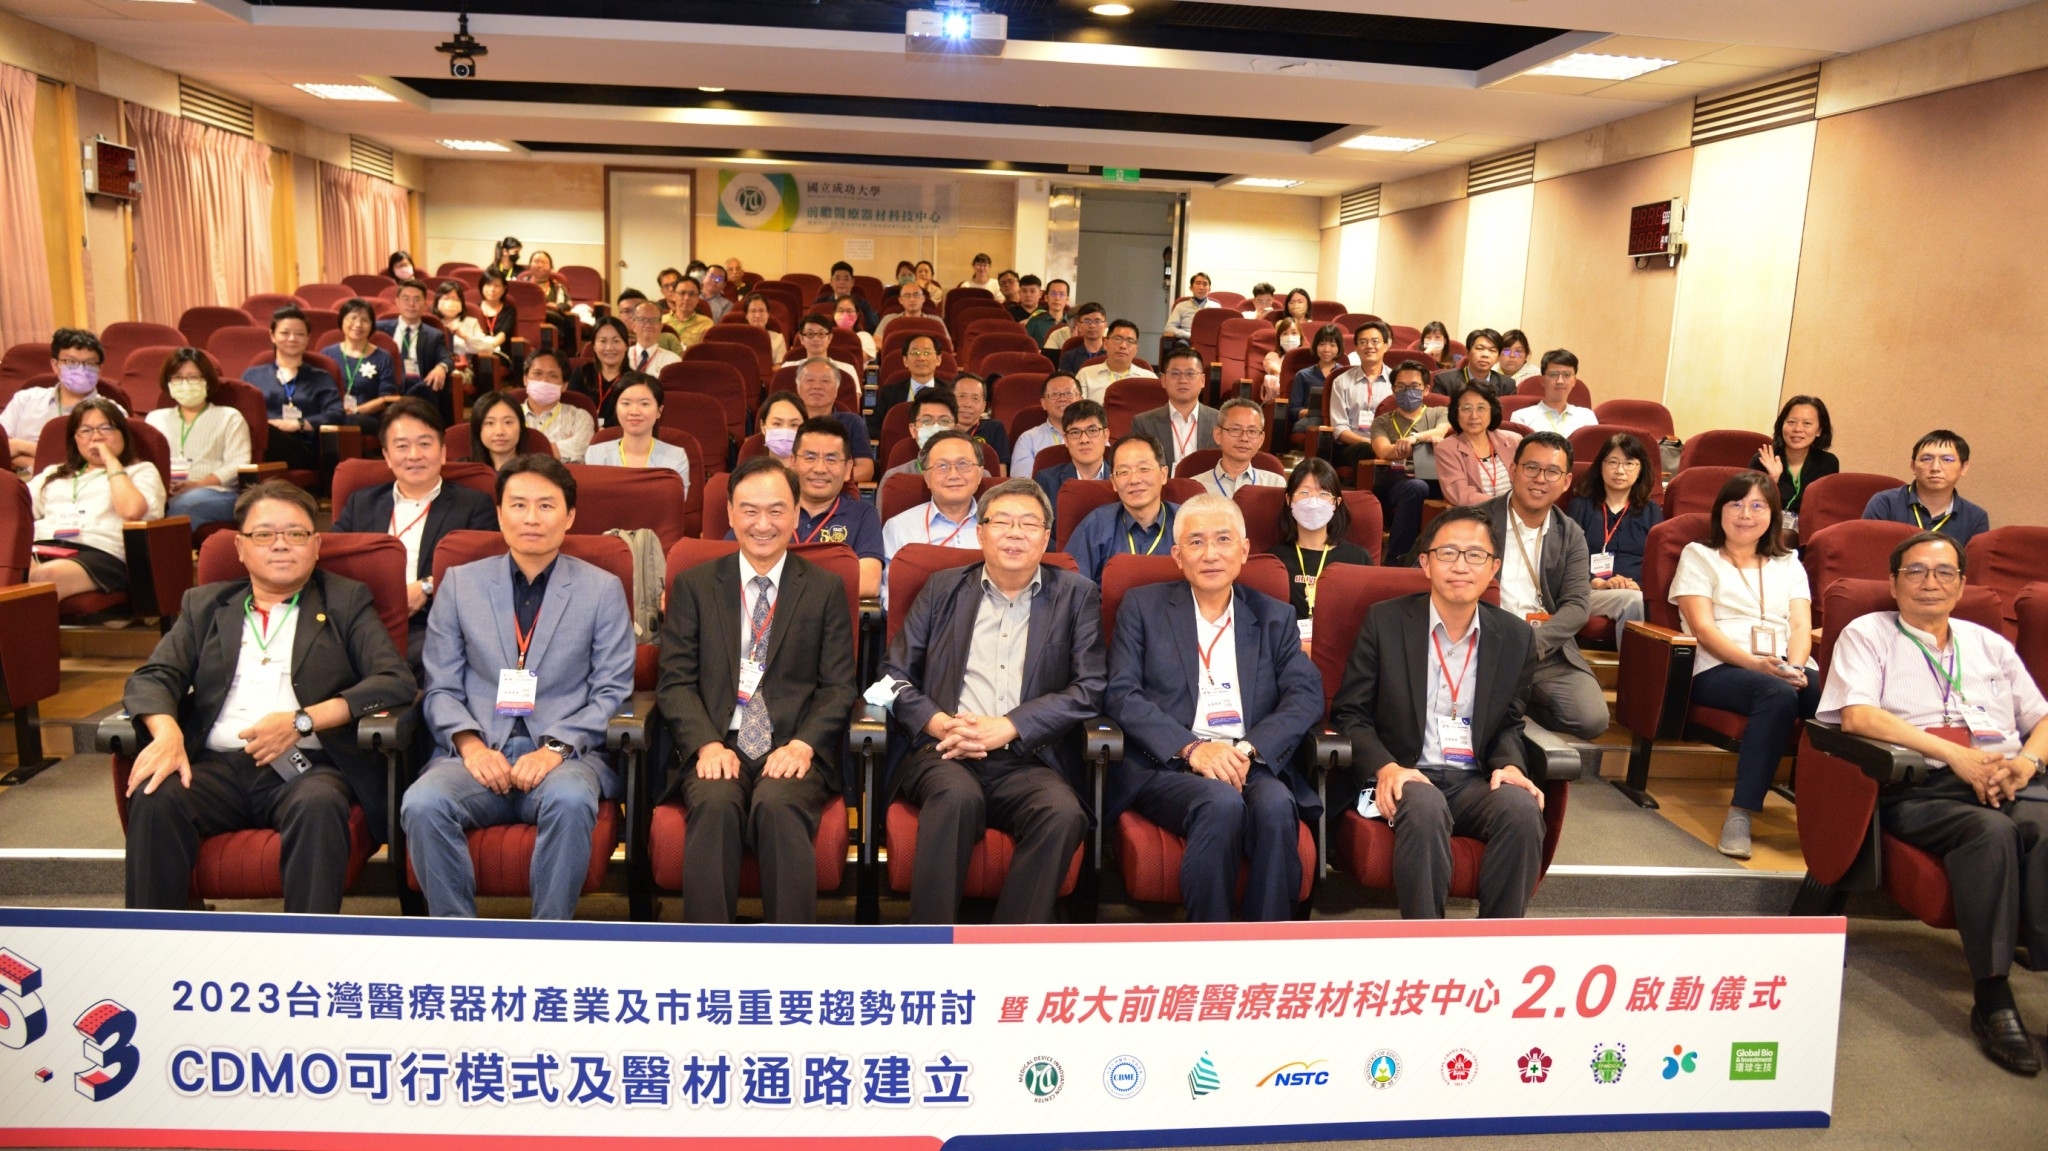 2023 台灣醫療器材產業及市場重要趨勢研討會盛況